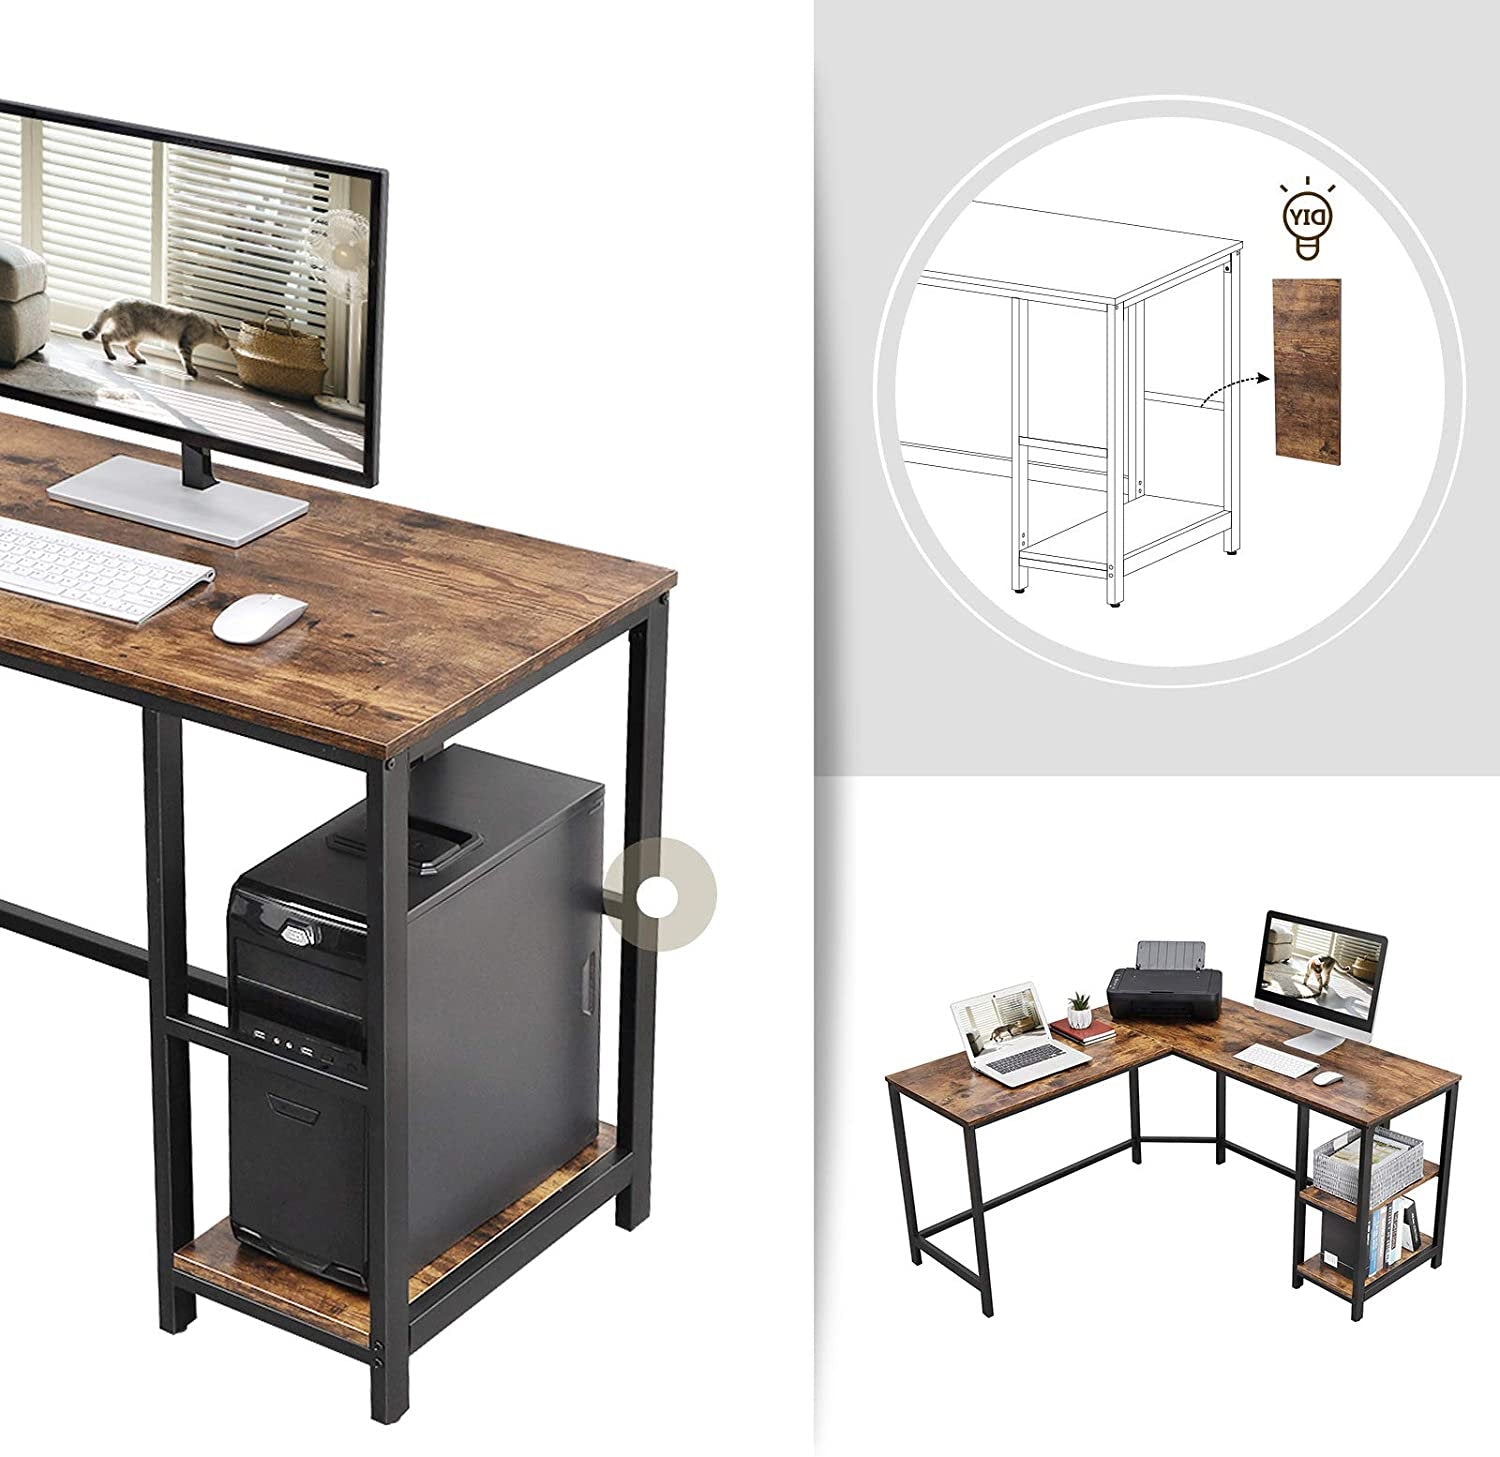 Rena Industrial Corner Desk with Shelves on RHS